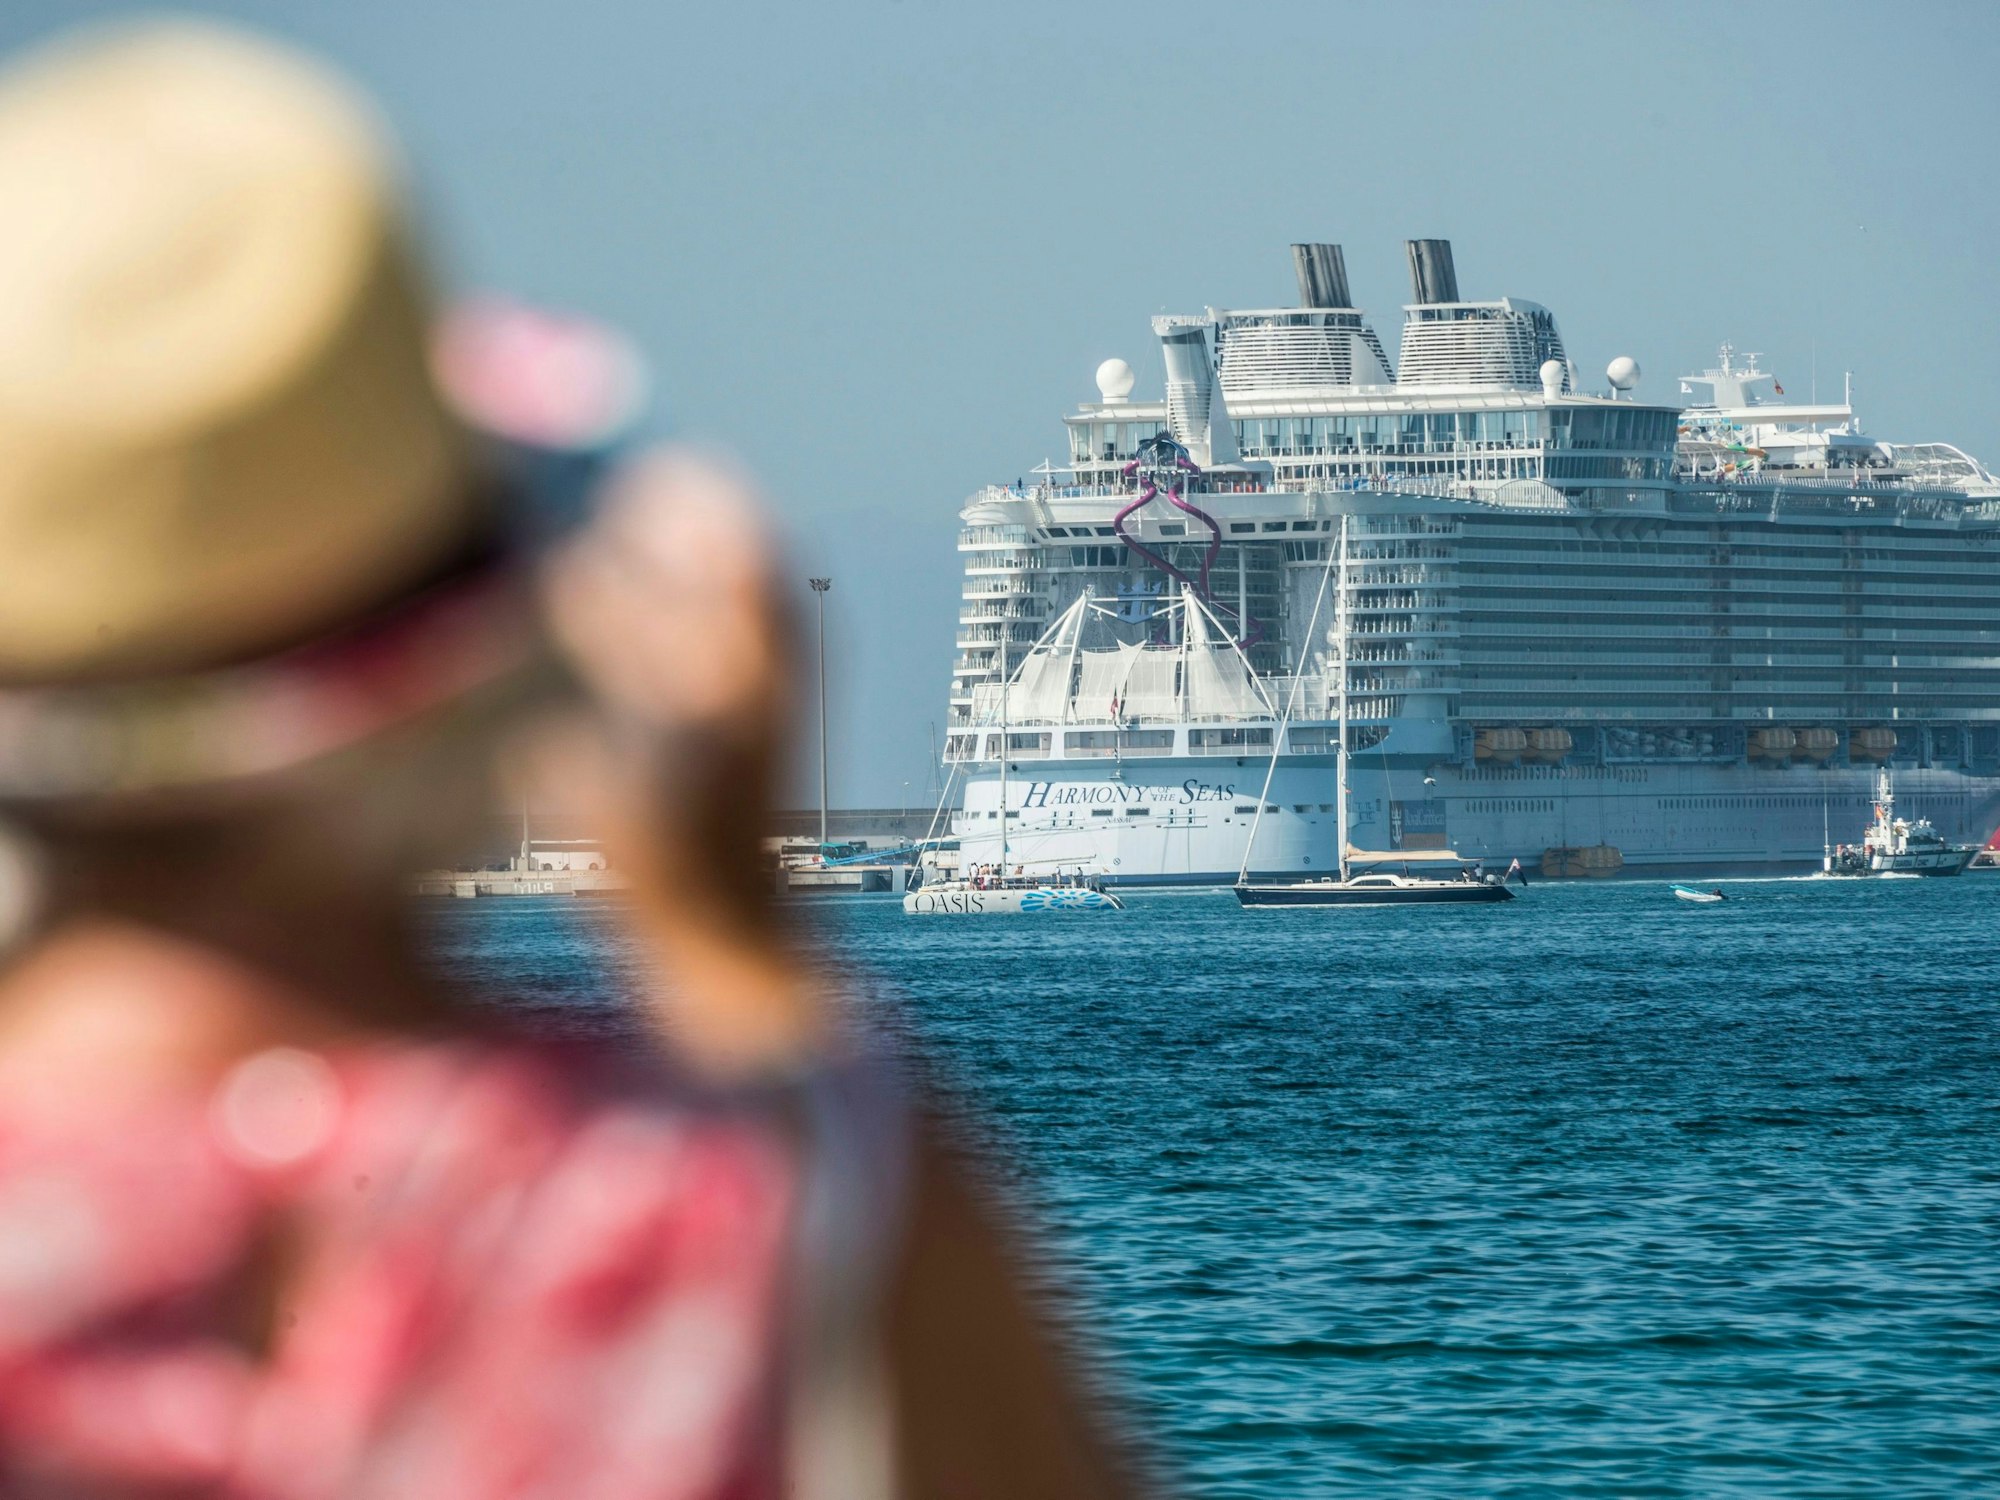 Das Kreuzfahrtschiff „Harmony of the Seas“ der Reederei „Royal Carribean“ beim Einlauf in Palma, Mallorca. Bei einer Kreuzfahrtreise durch die Karibik filmte ein Passagier über 150 Gäste des Schiffes. Er hatte eine WLAN-Kamera auf einer öffentlichen Toilette versteckt.